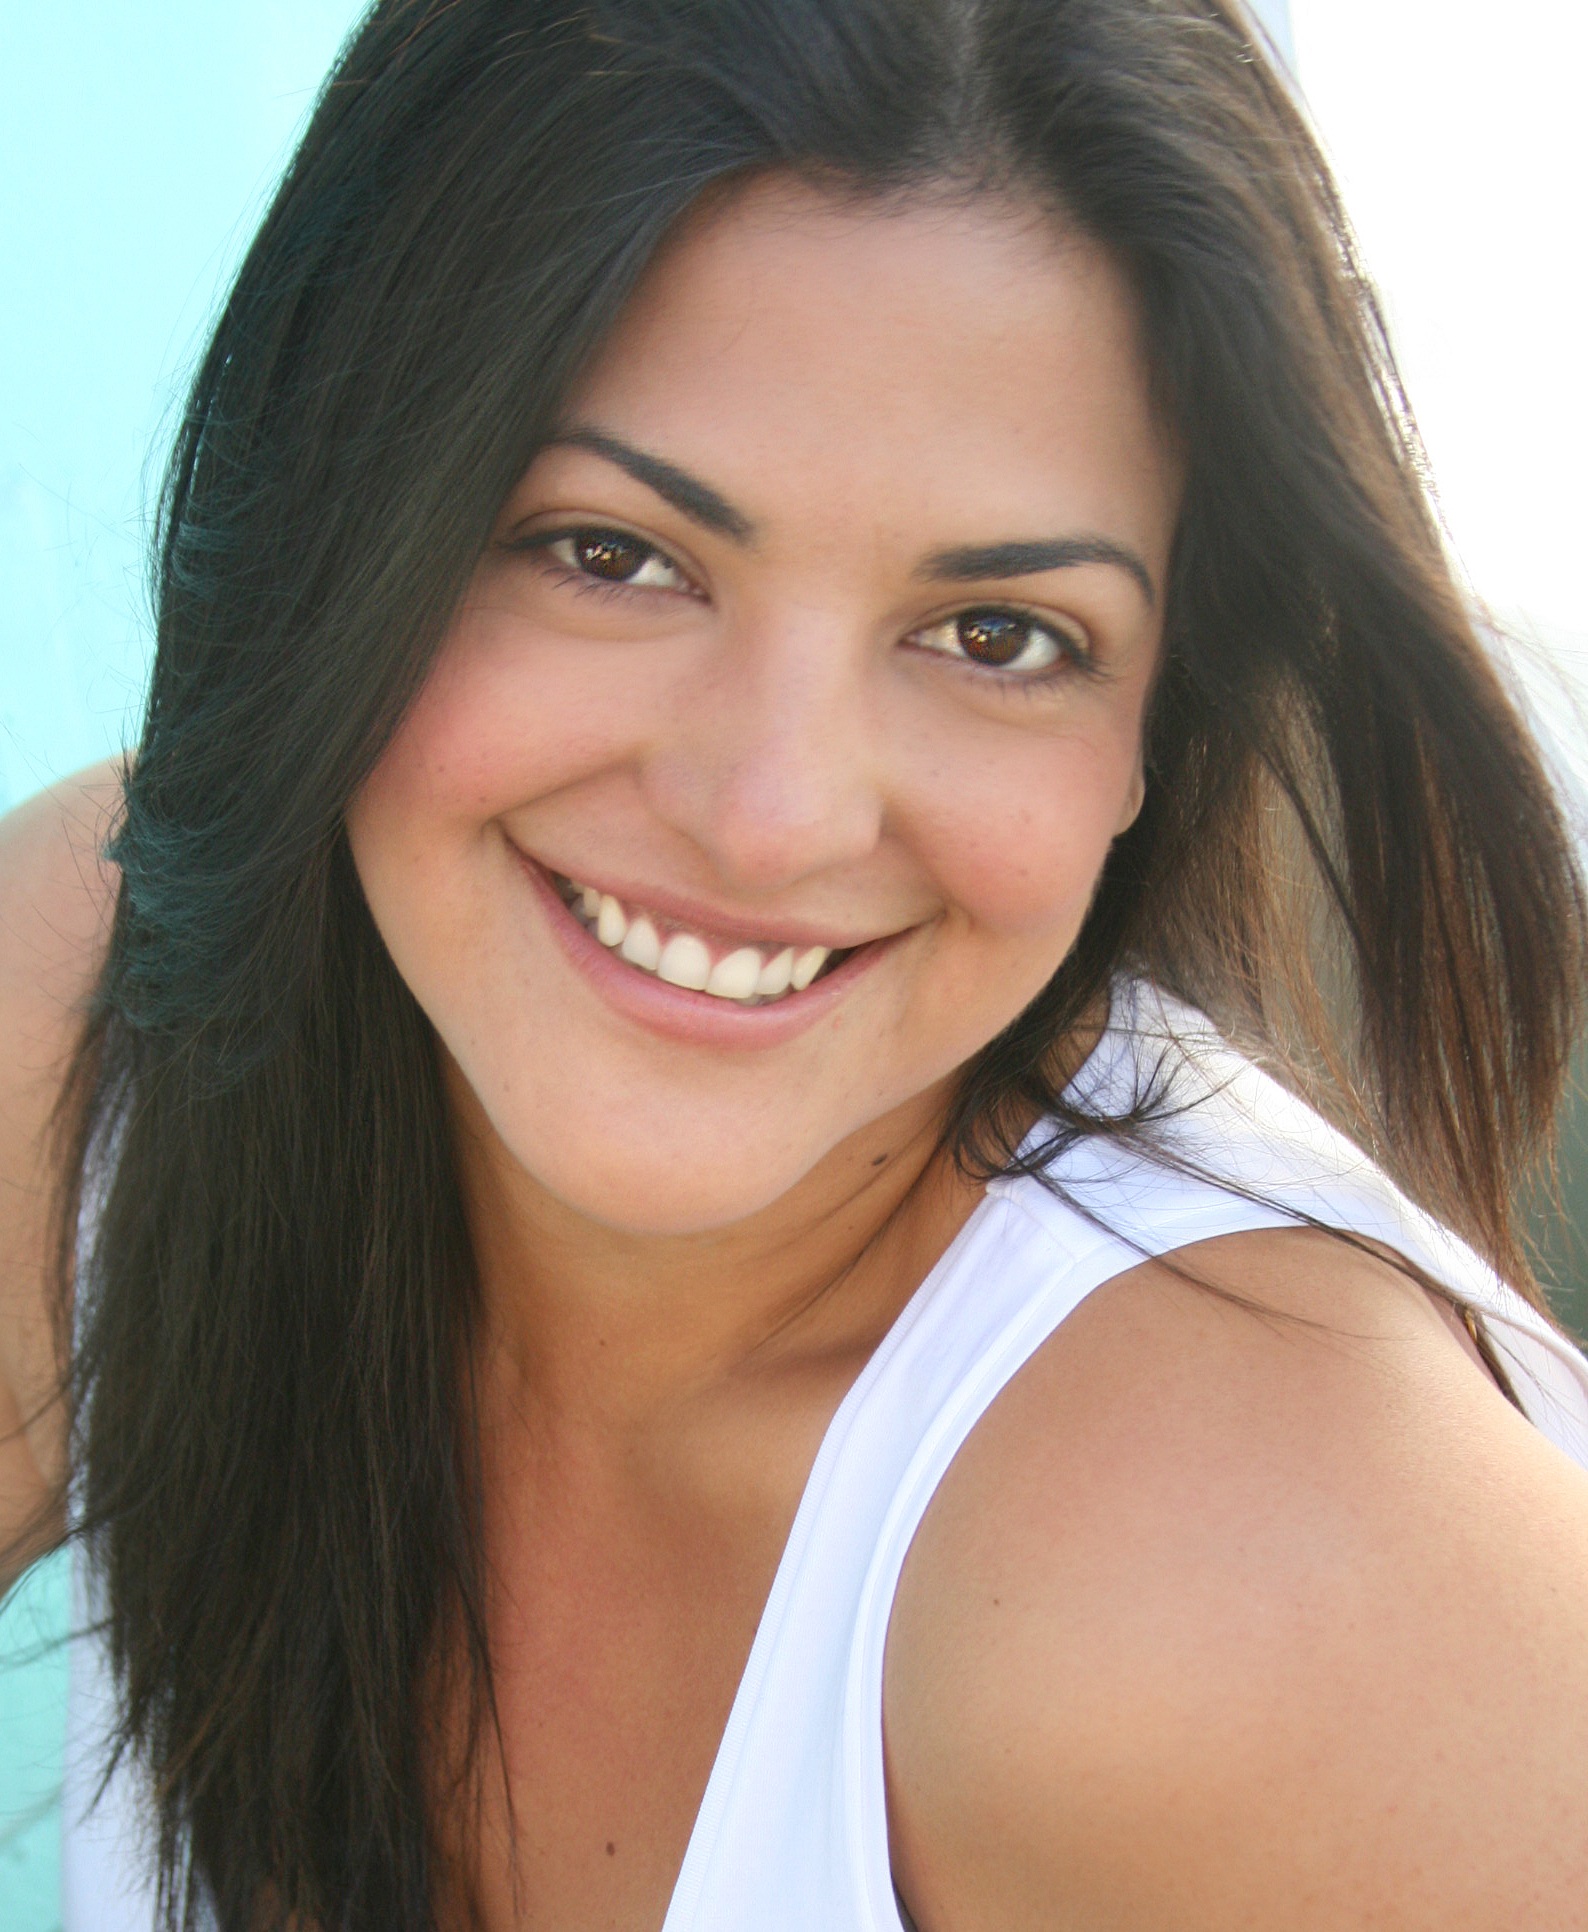 Maria Ochoa